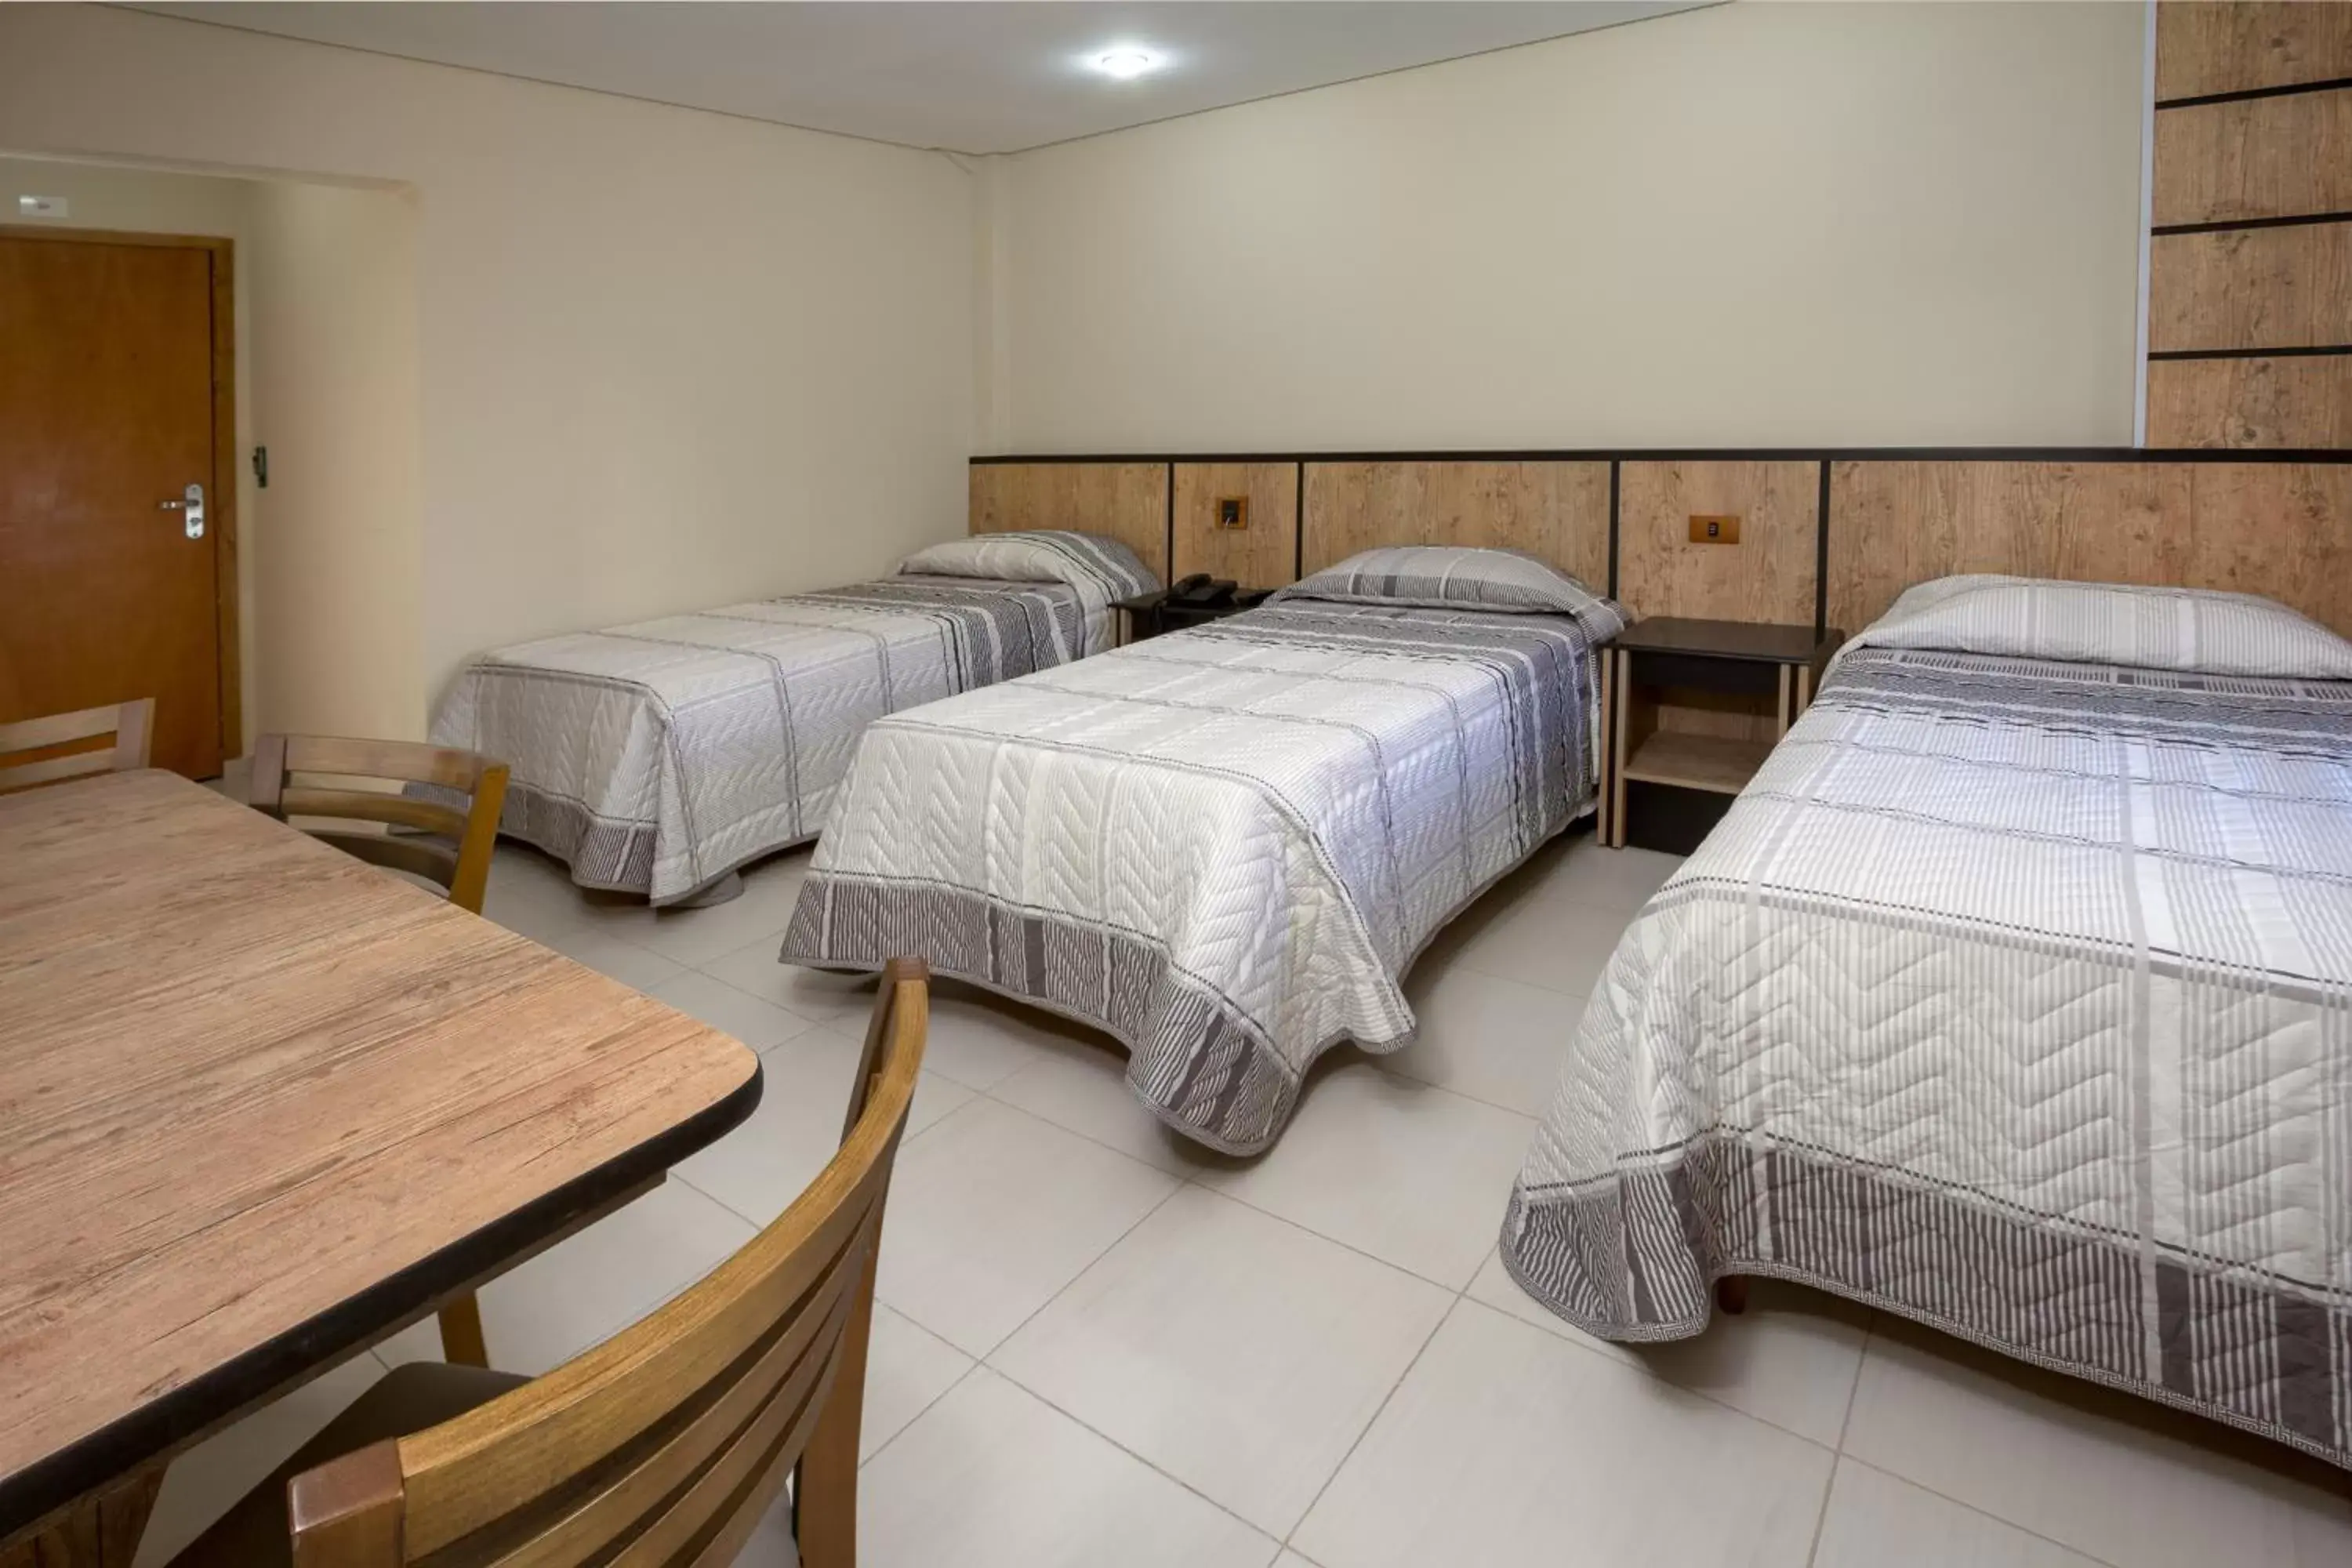 Bed, Room Photo in Hotel America do Sul